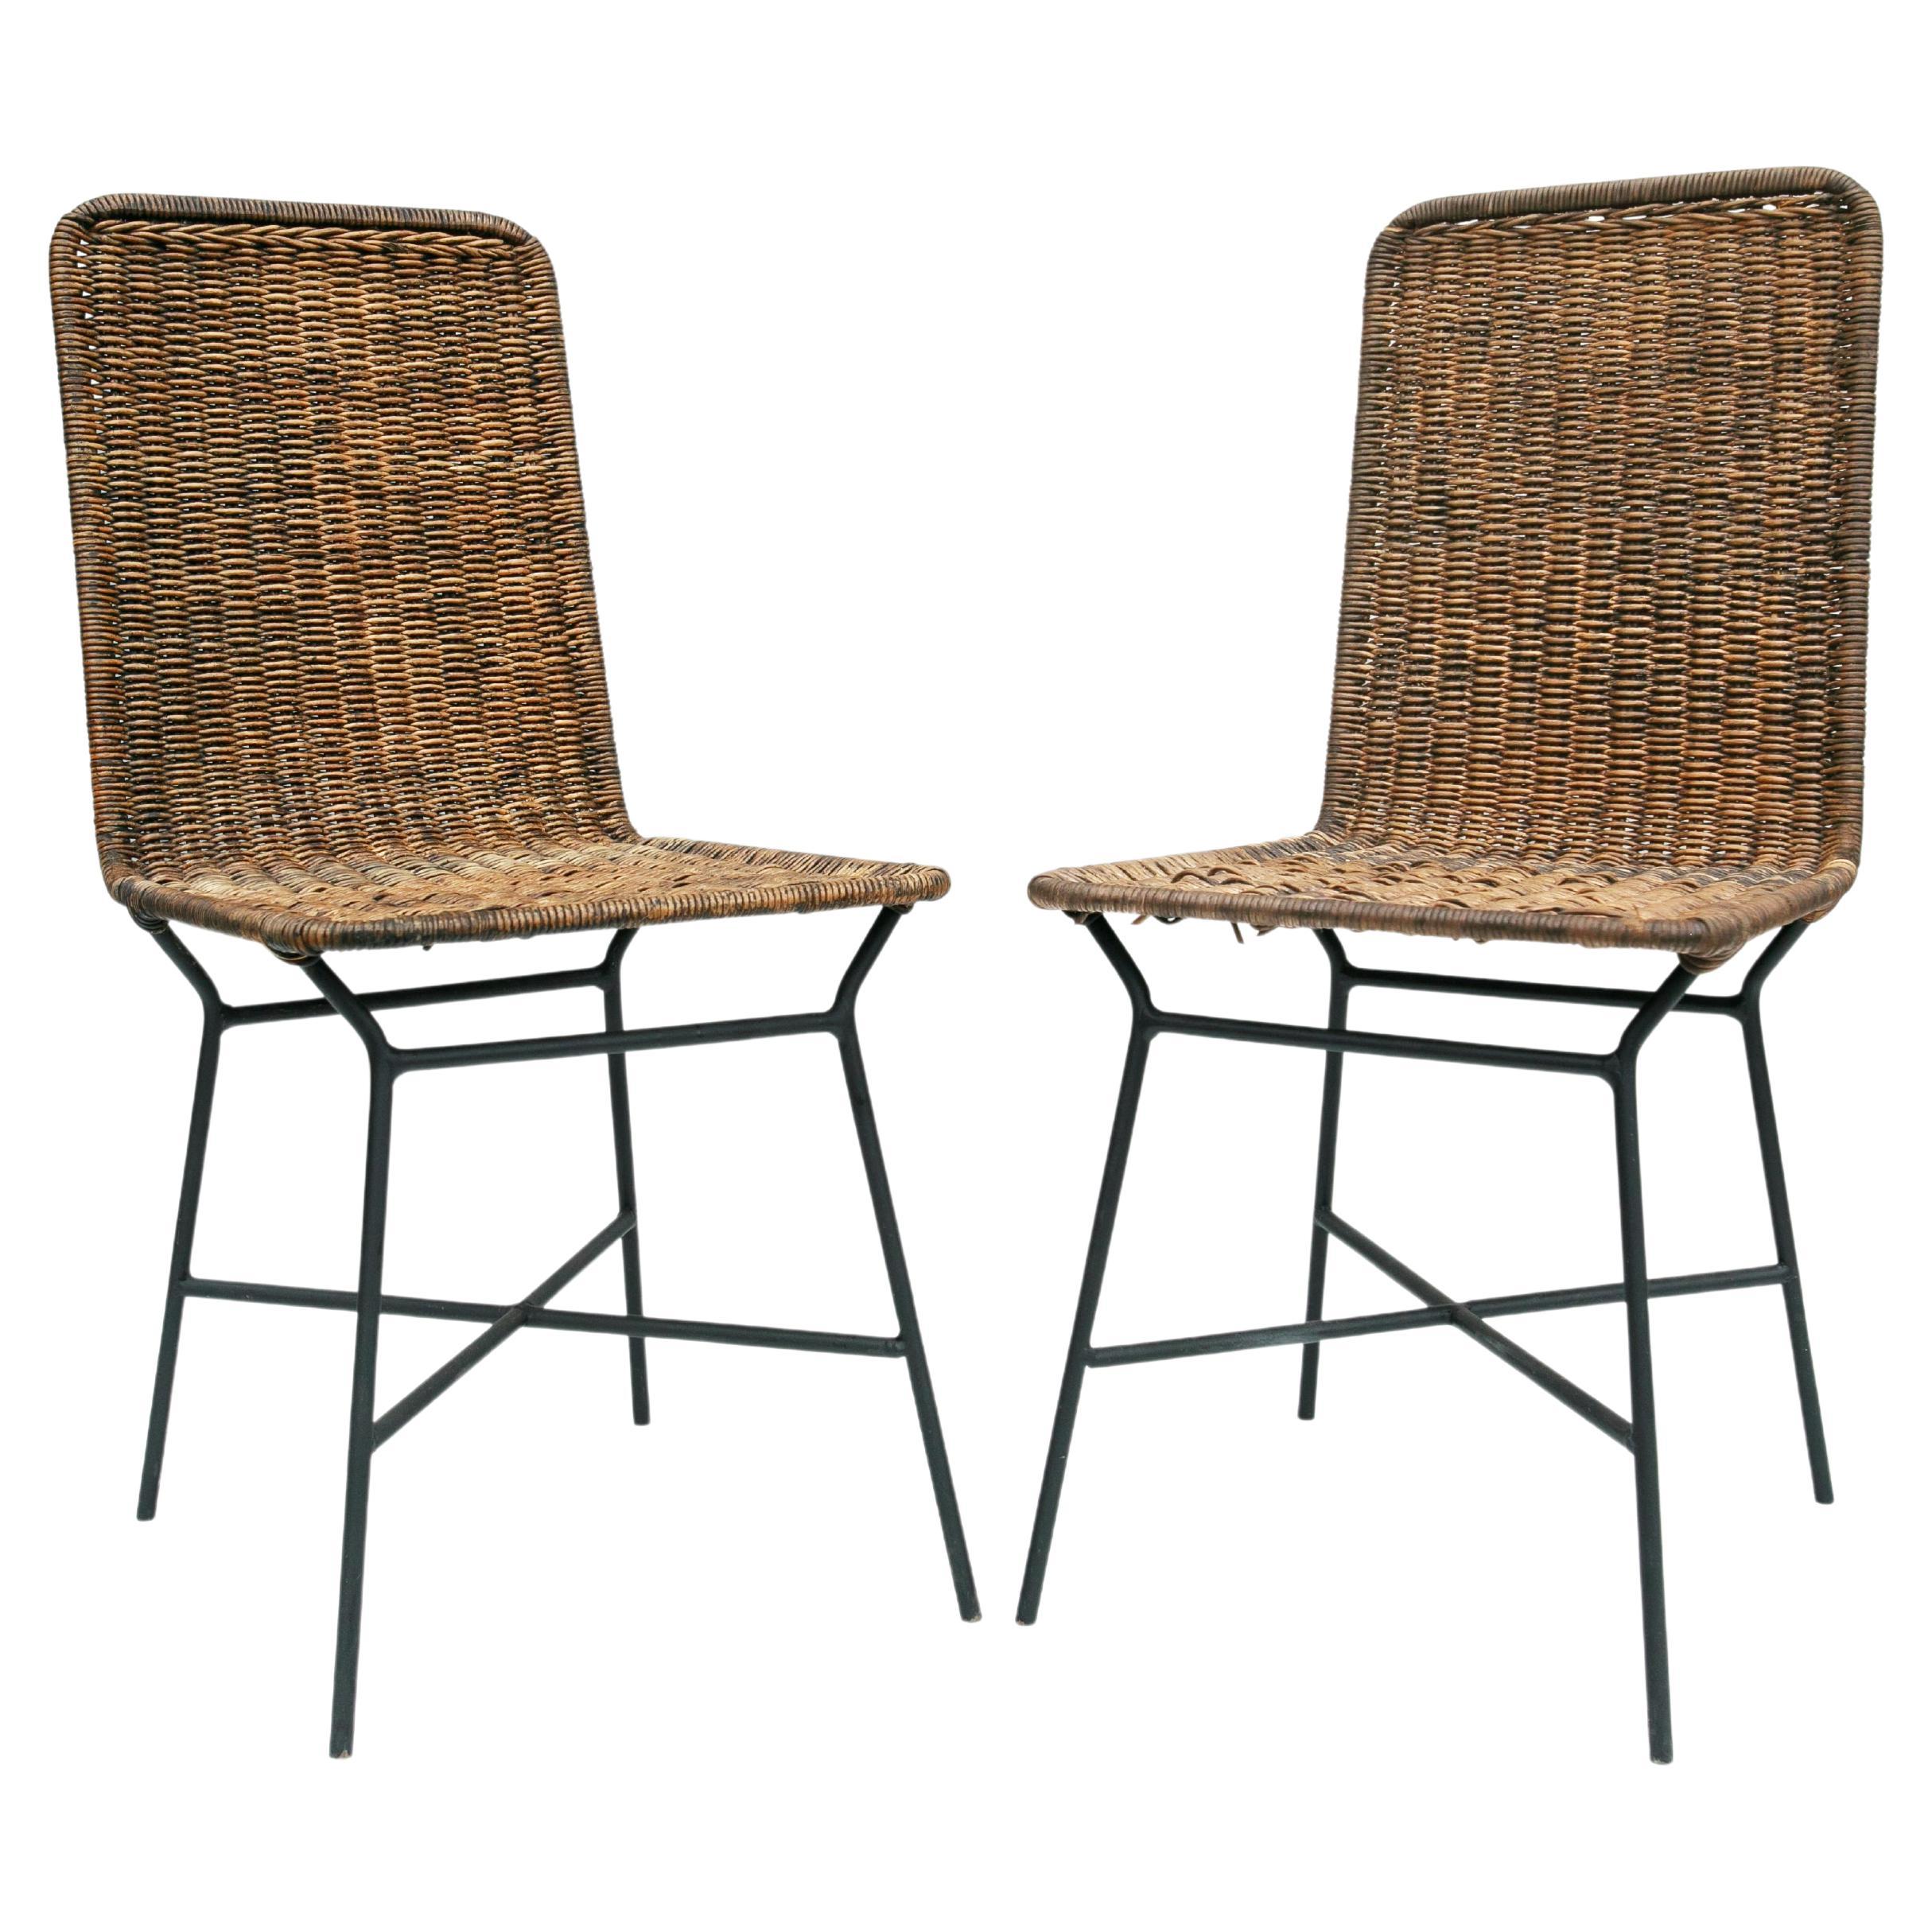 Brasilianische moderne Stühle aus Rohrgeflecht und Metall von Carlo Hauner, 1950er Jahre, Brasilien